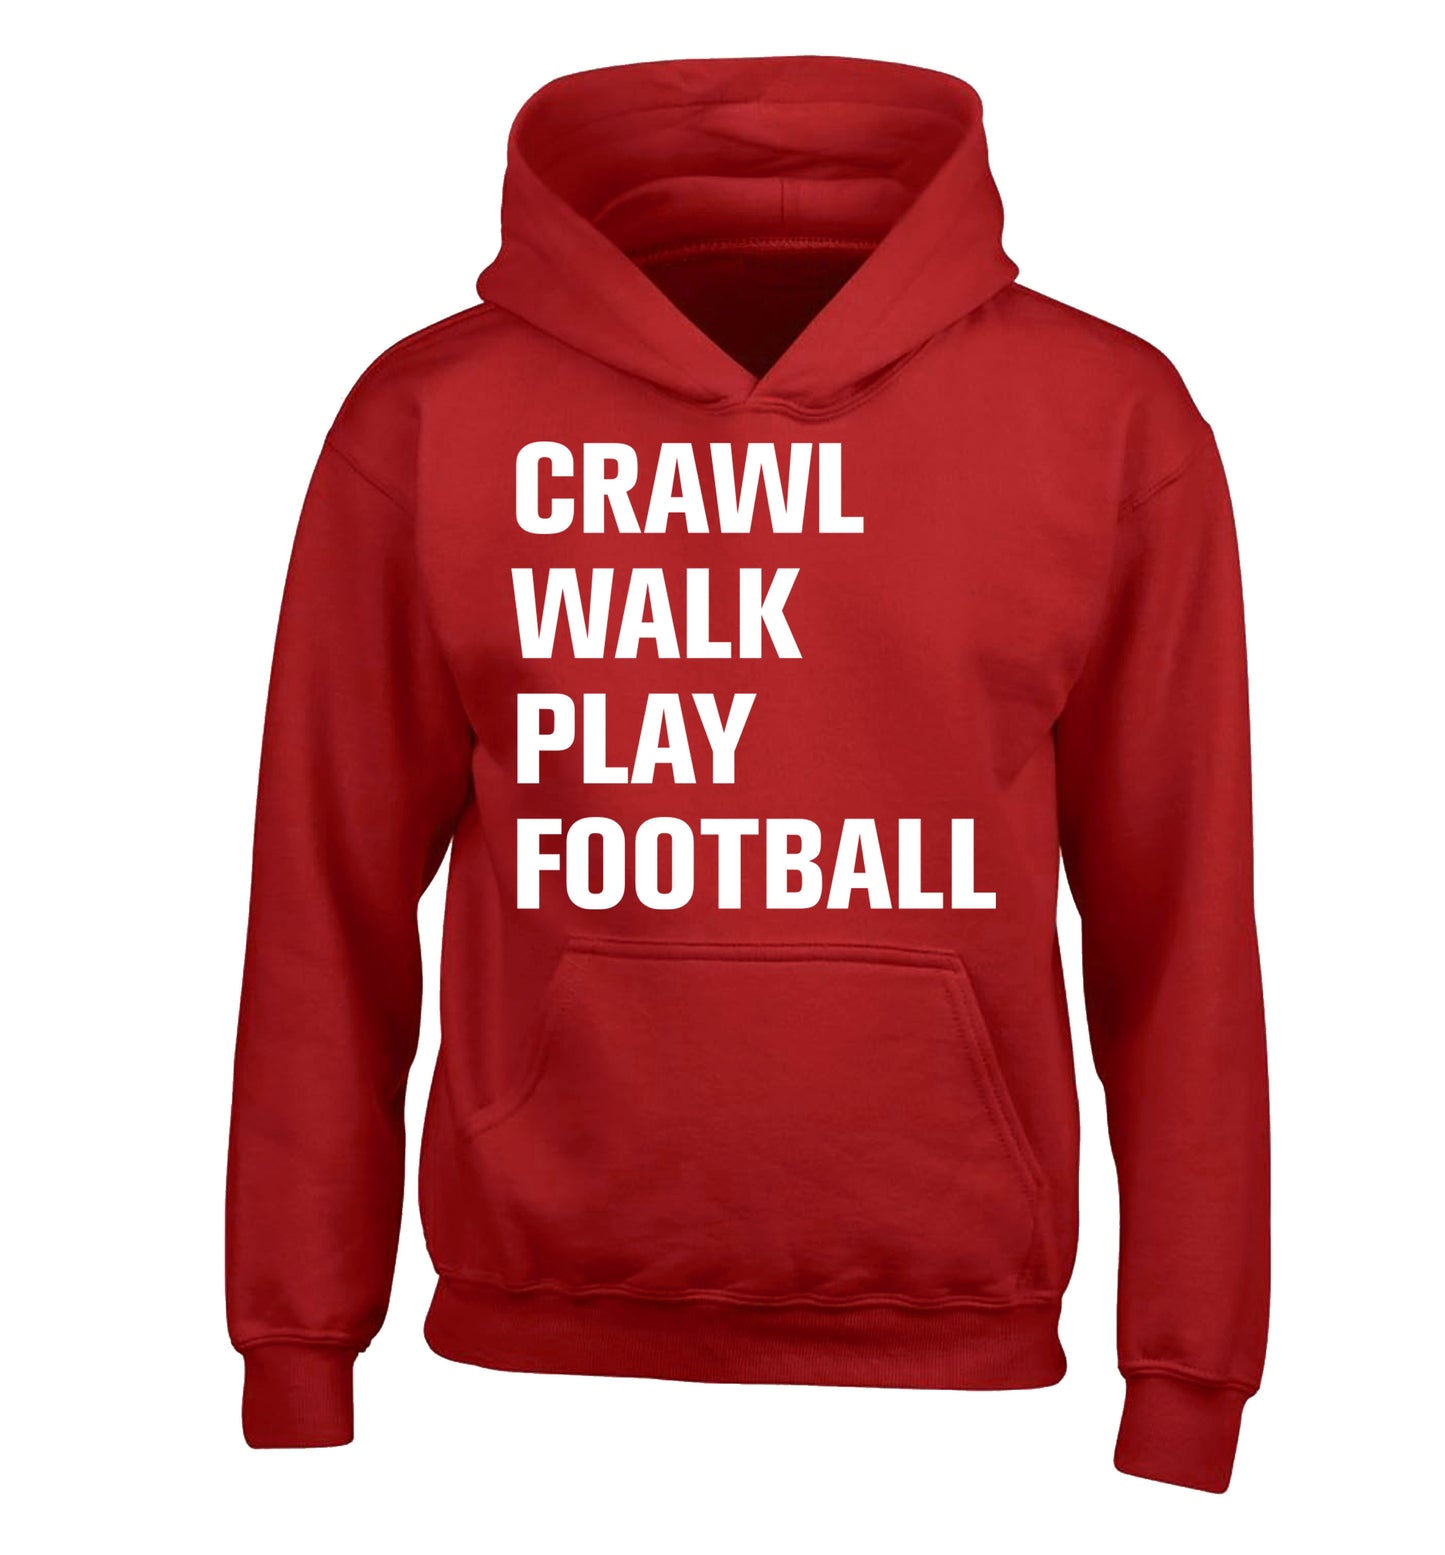 Crawl, walk, play football children's red hoodie 12-13 Years